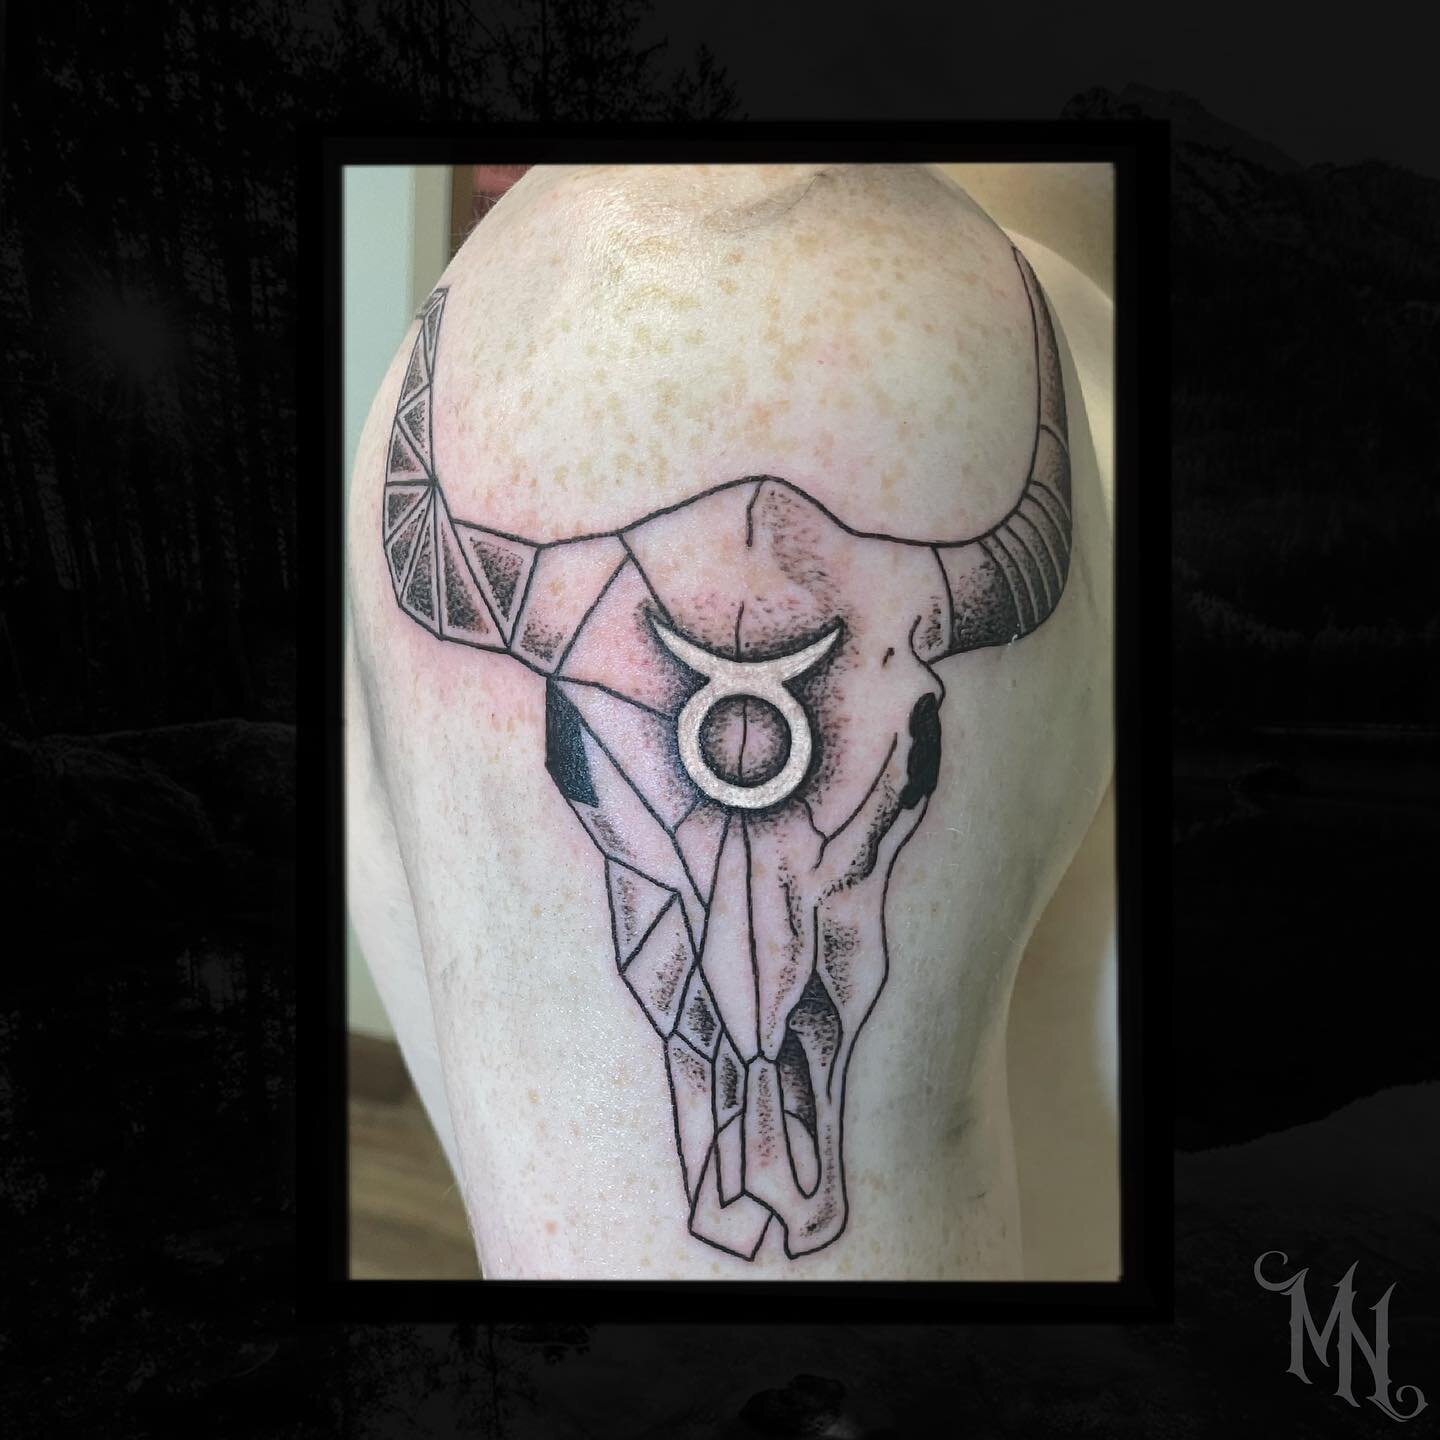 Taurus skull tattoo ♉️ Call 905-435-7551 for bookings and inquiries #taurustattoo #bullskulltattoo #taurus #geometrictattoo #stipletattoo #blackandgreytattoo #illistrativetattoo #tattoo #tattooinspiration #whitby #gta #toronto